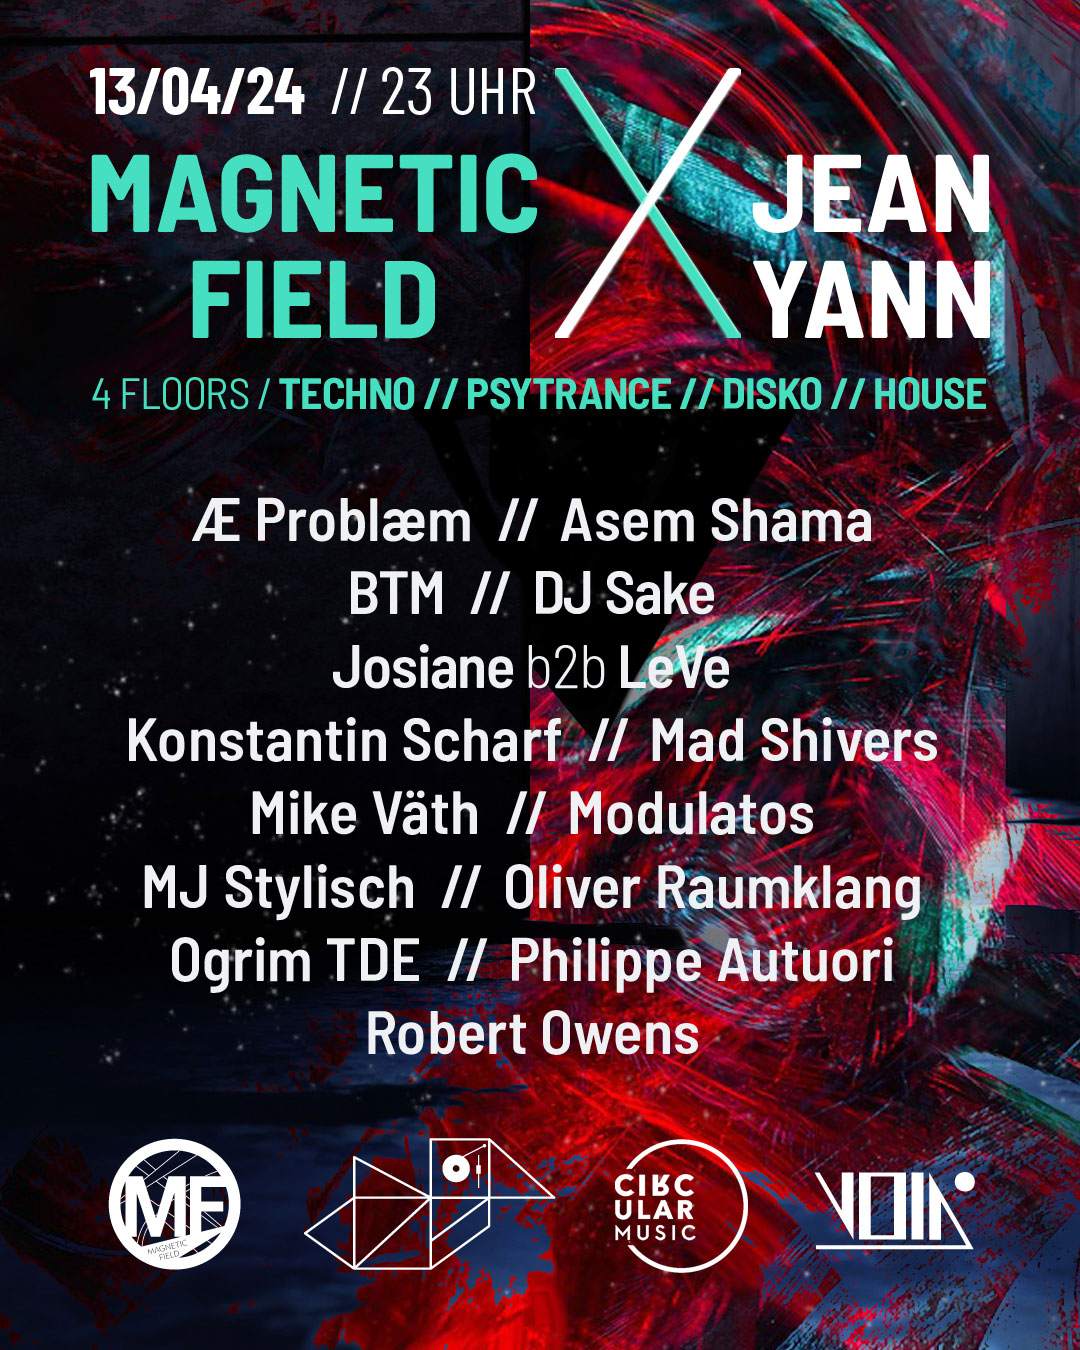 Magnetic Field Berlin Feat. Jean Yann on 4 floors (Psytrance, Techno, House, Disko) - Página trasera